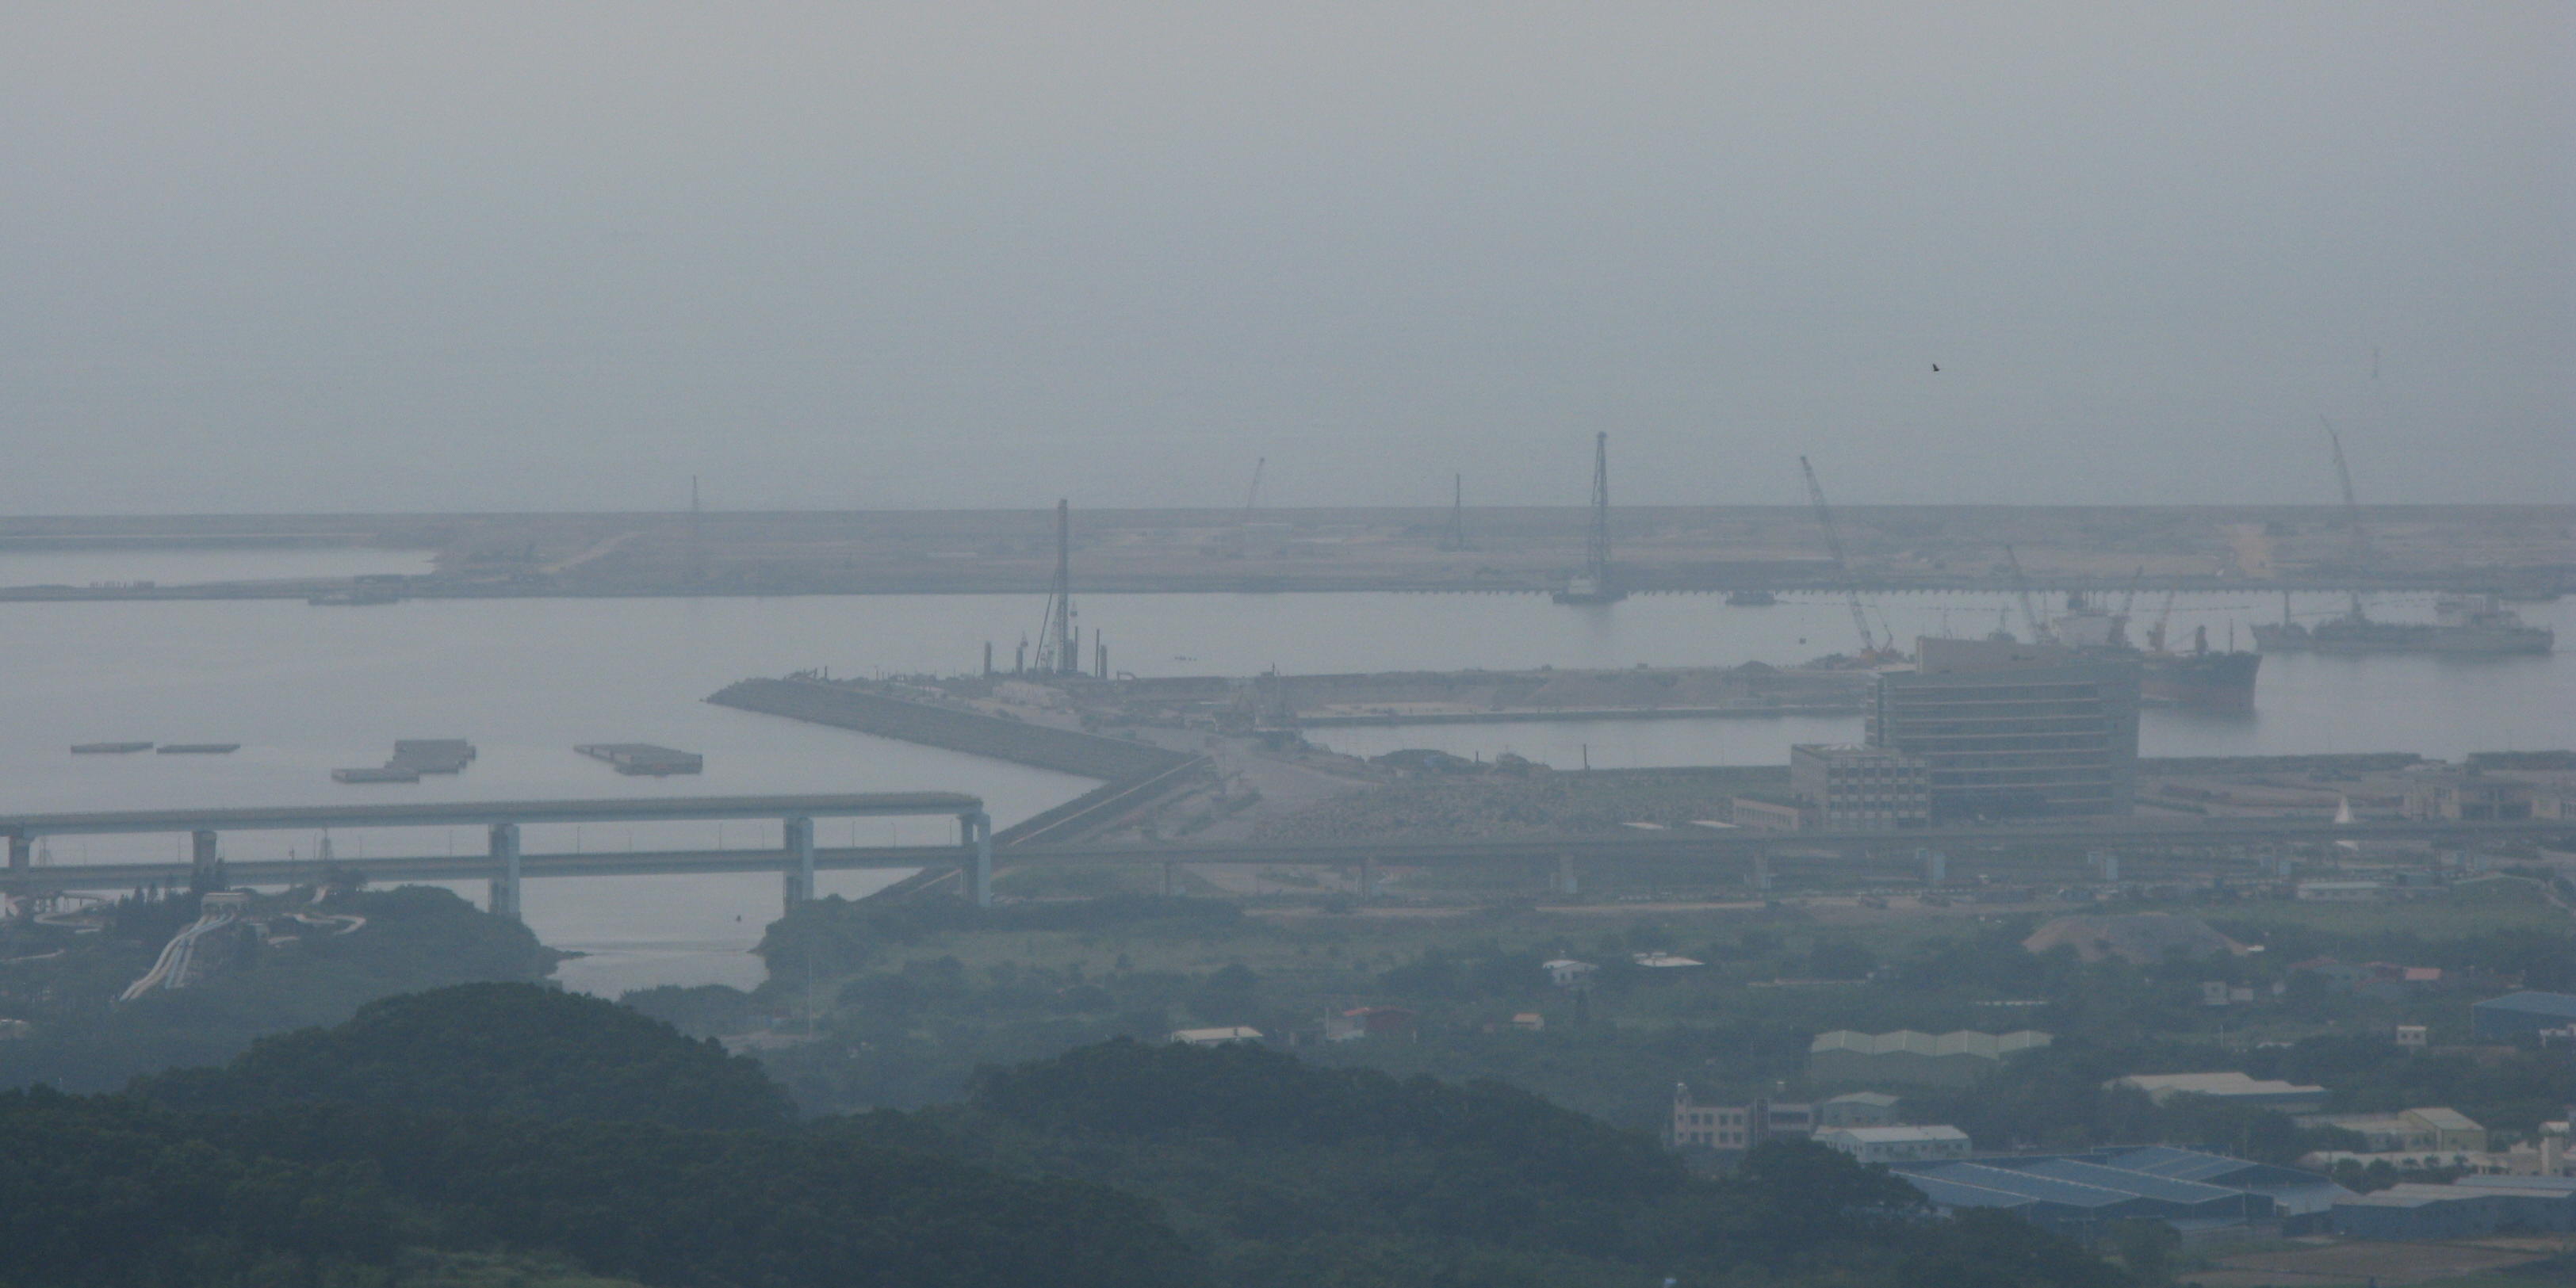 Taipei Port